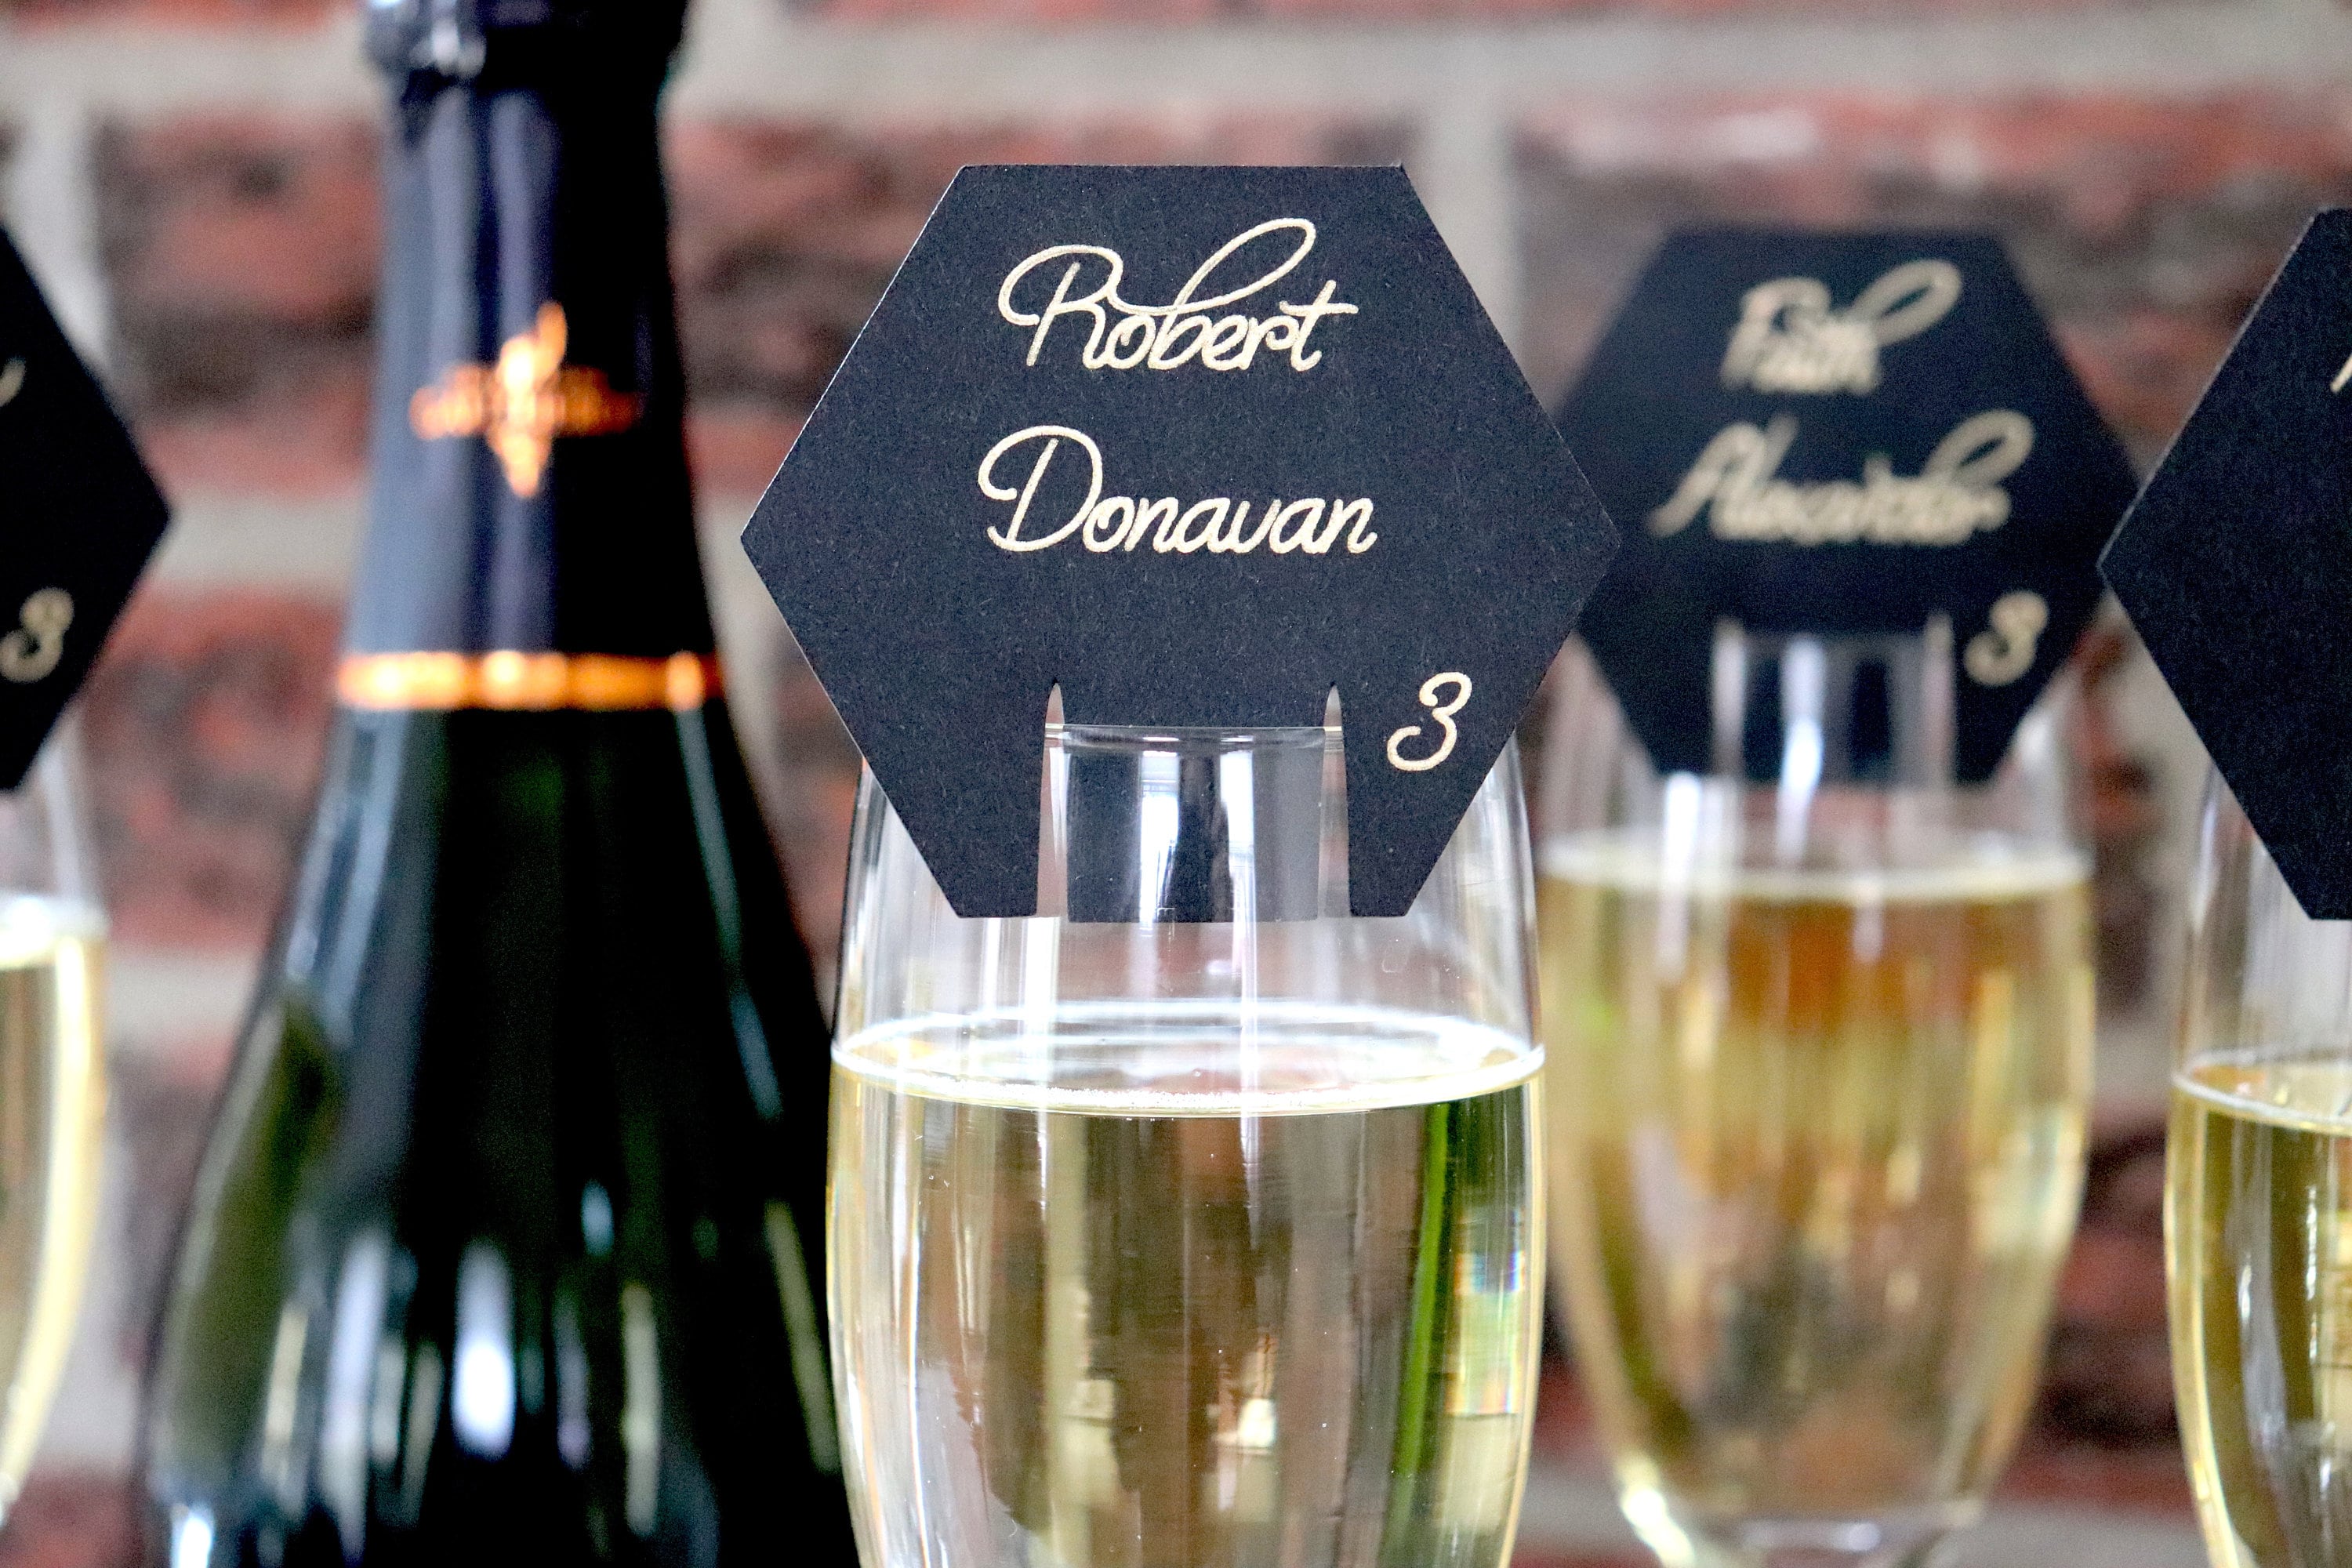 Rose Gold Moet Champagne Escort Cards